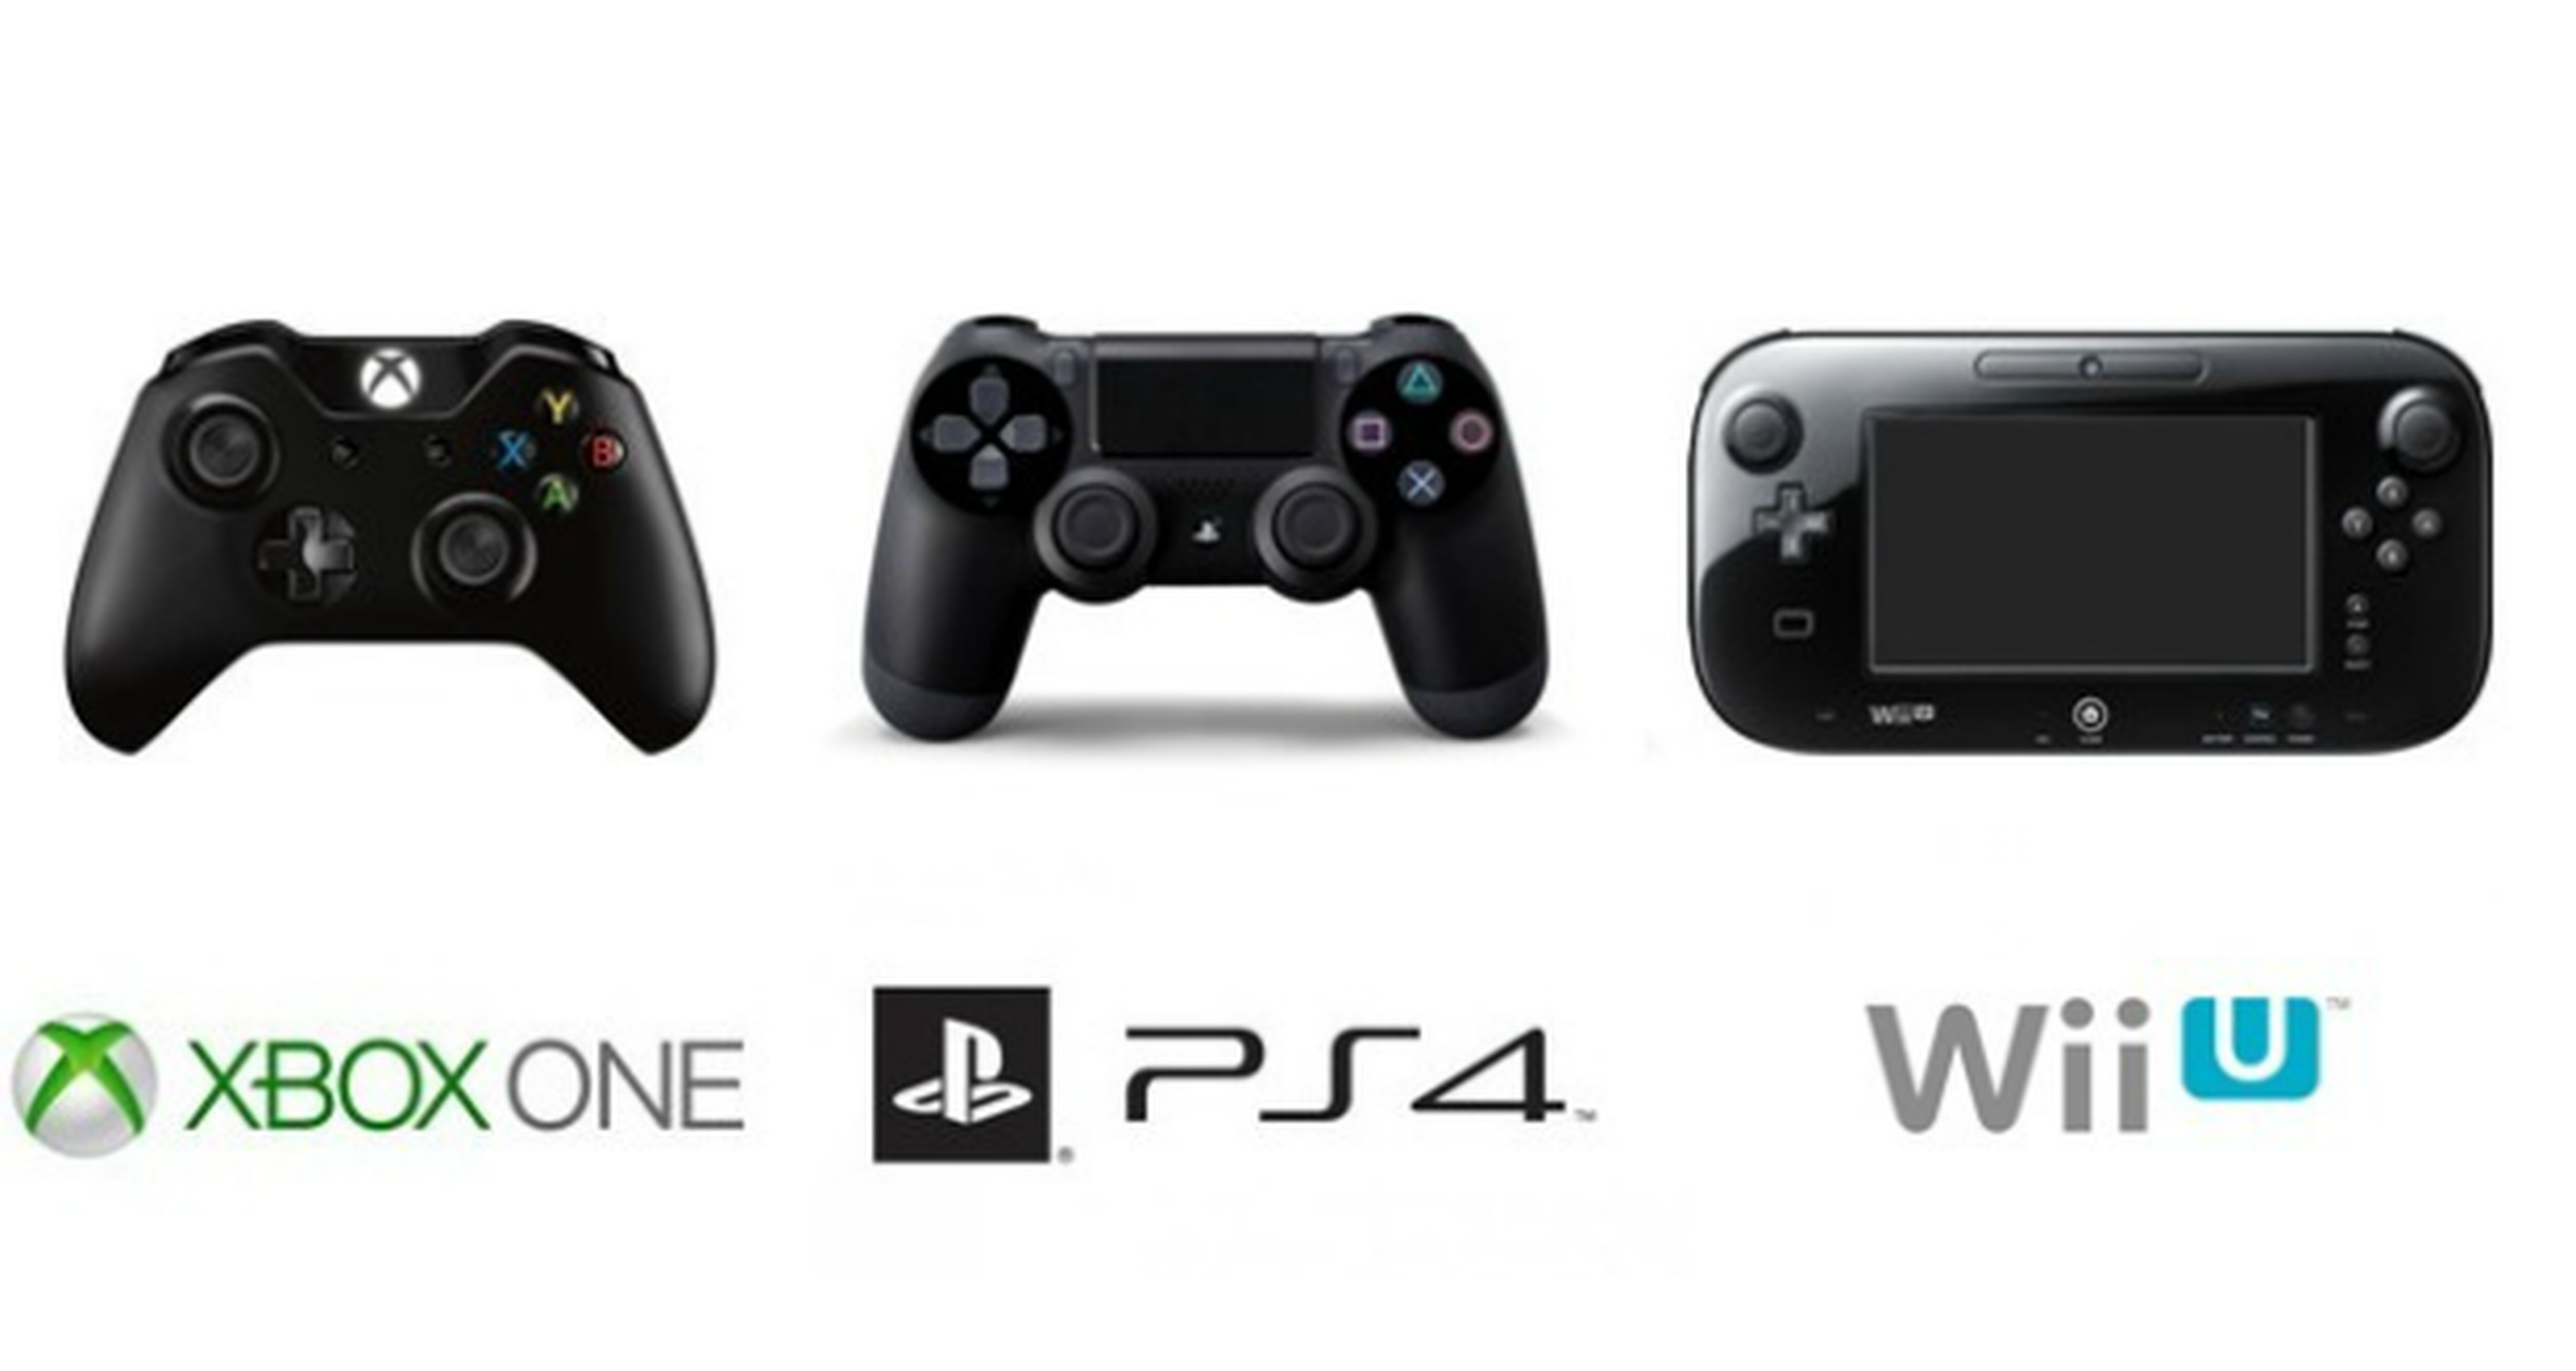 Un recorrido por las ventas de PS4, Xbox One y Wii U desde noviembre de 2013